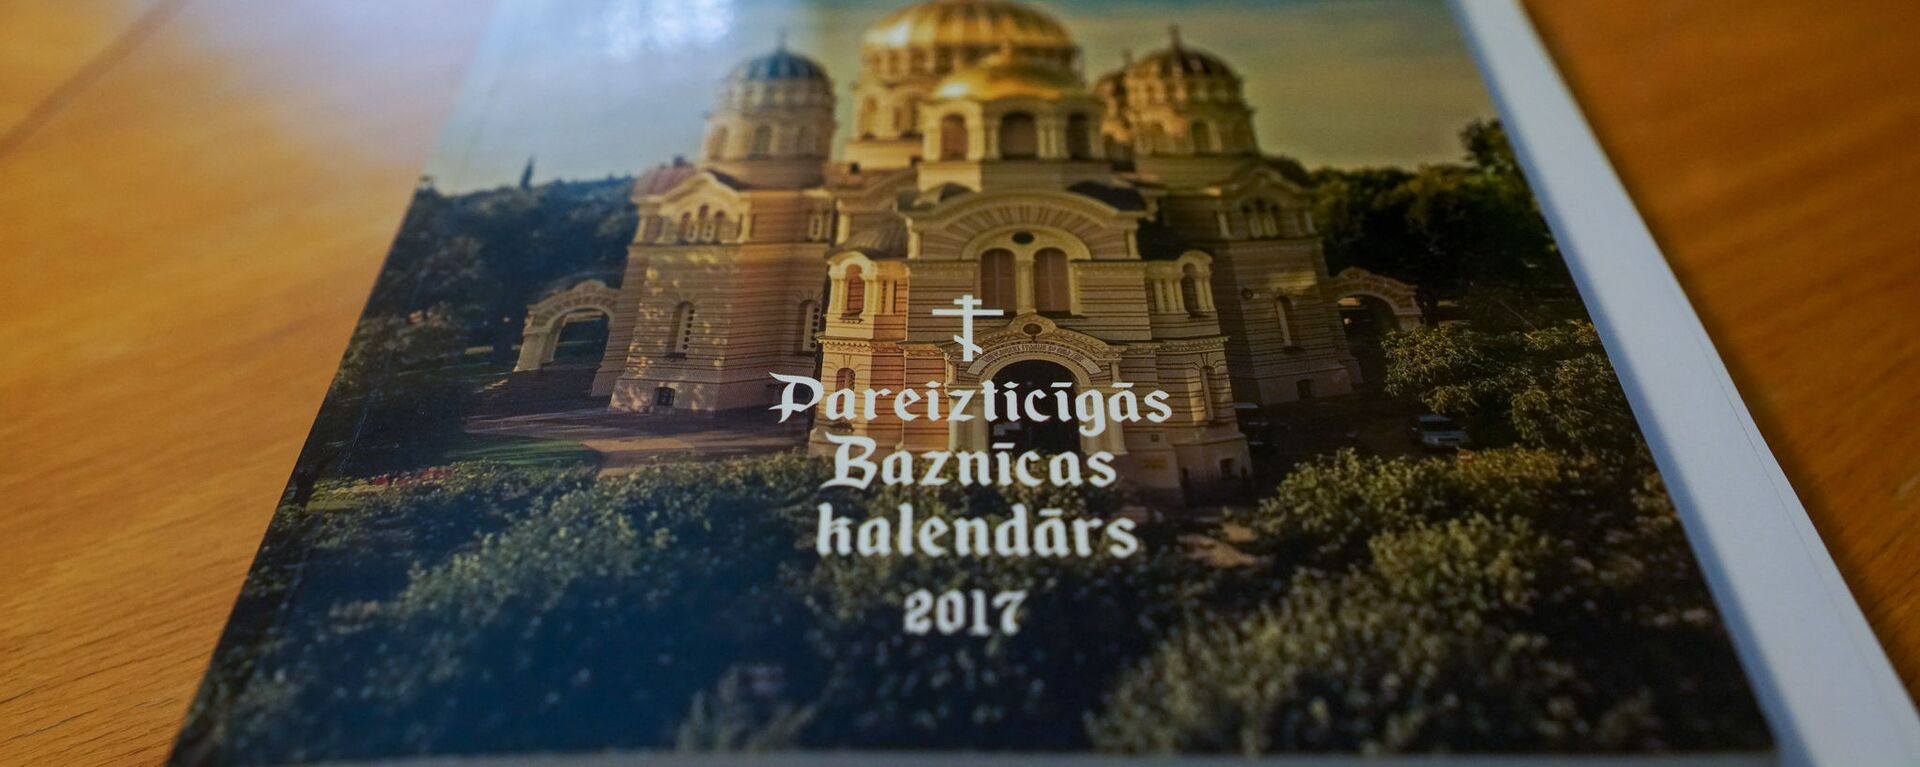 Латвийская православная церковь издает книги, молитвословы, календари и на латышском языке - Sputnik Латвия, 1920, 29.03.2020